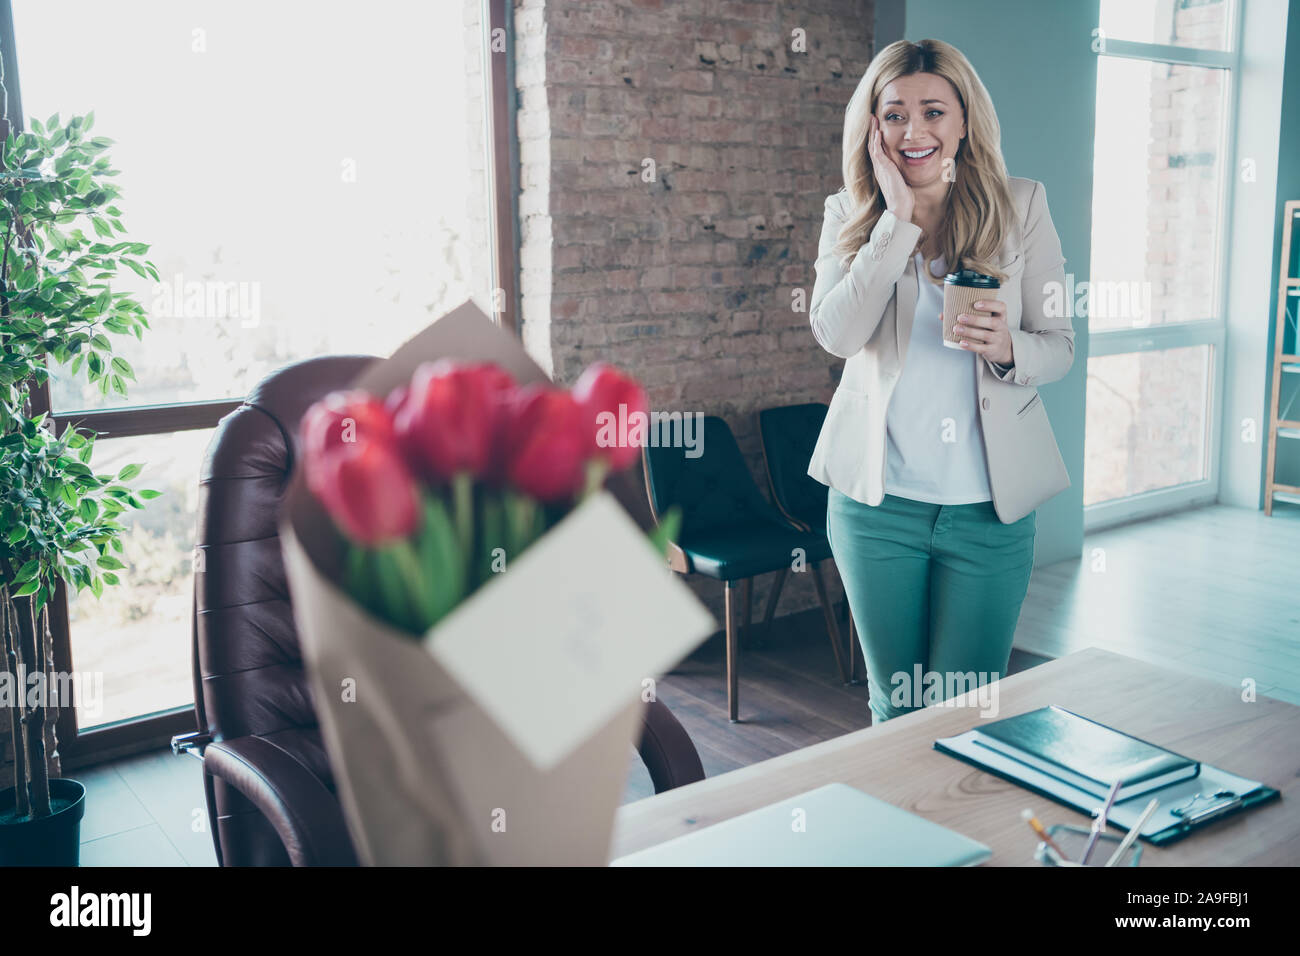 Foto der schönen blonden business lady kam Arbeitsplatz Holding takeaway Kaffee erstaunt frische Tulpen Bündel kleine Postkarte fremder geheimer Bewunderer auf Stockfoto